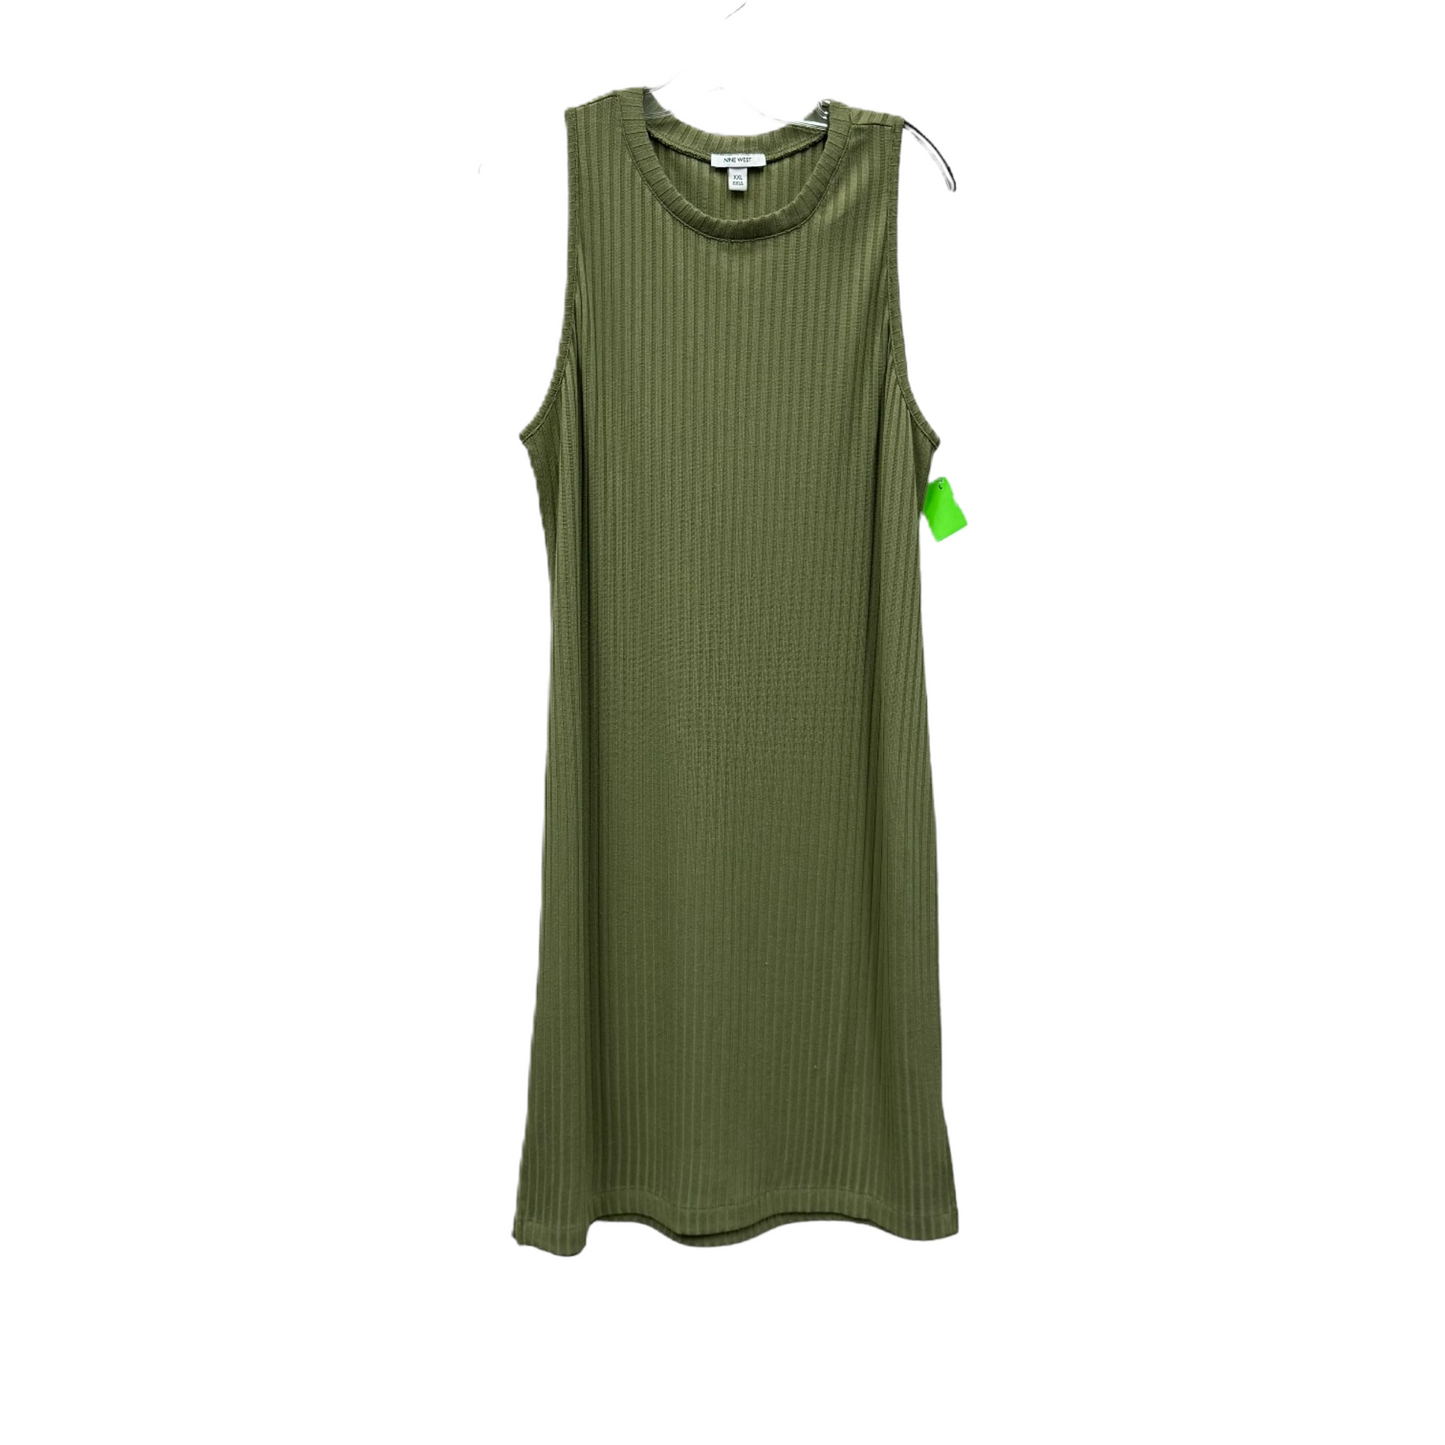 Dress Casual Maxi By Nine West  Size: Xxl